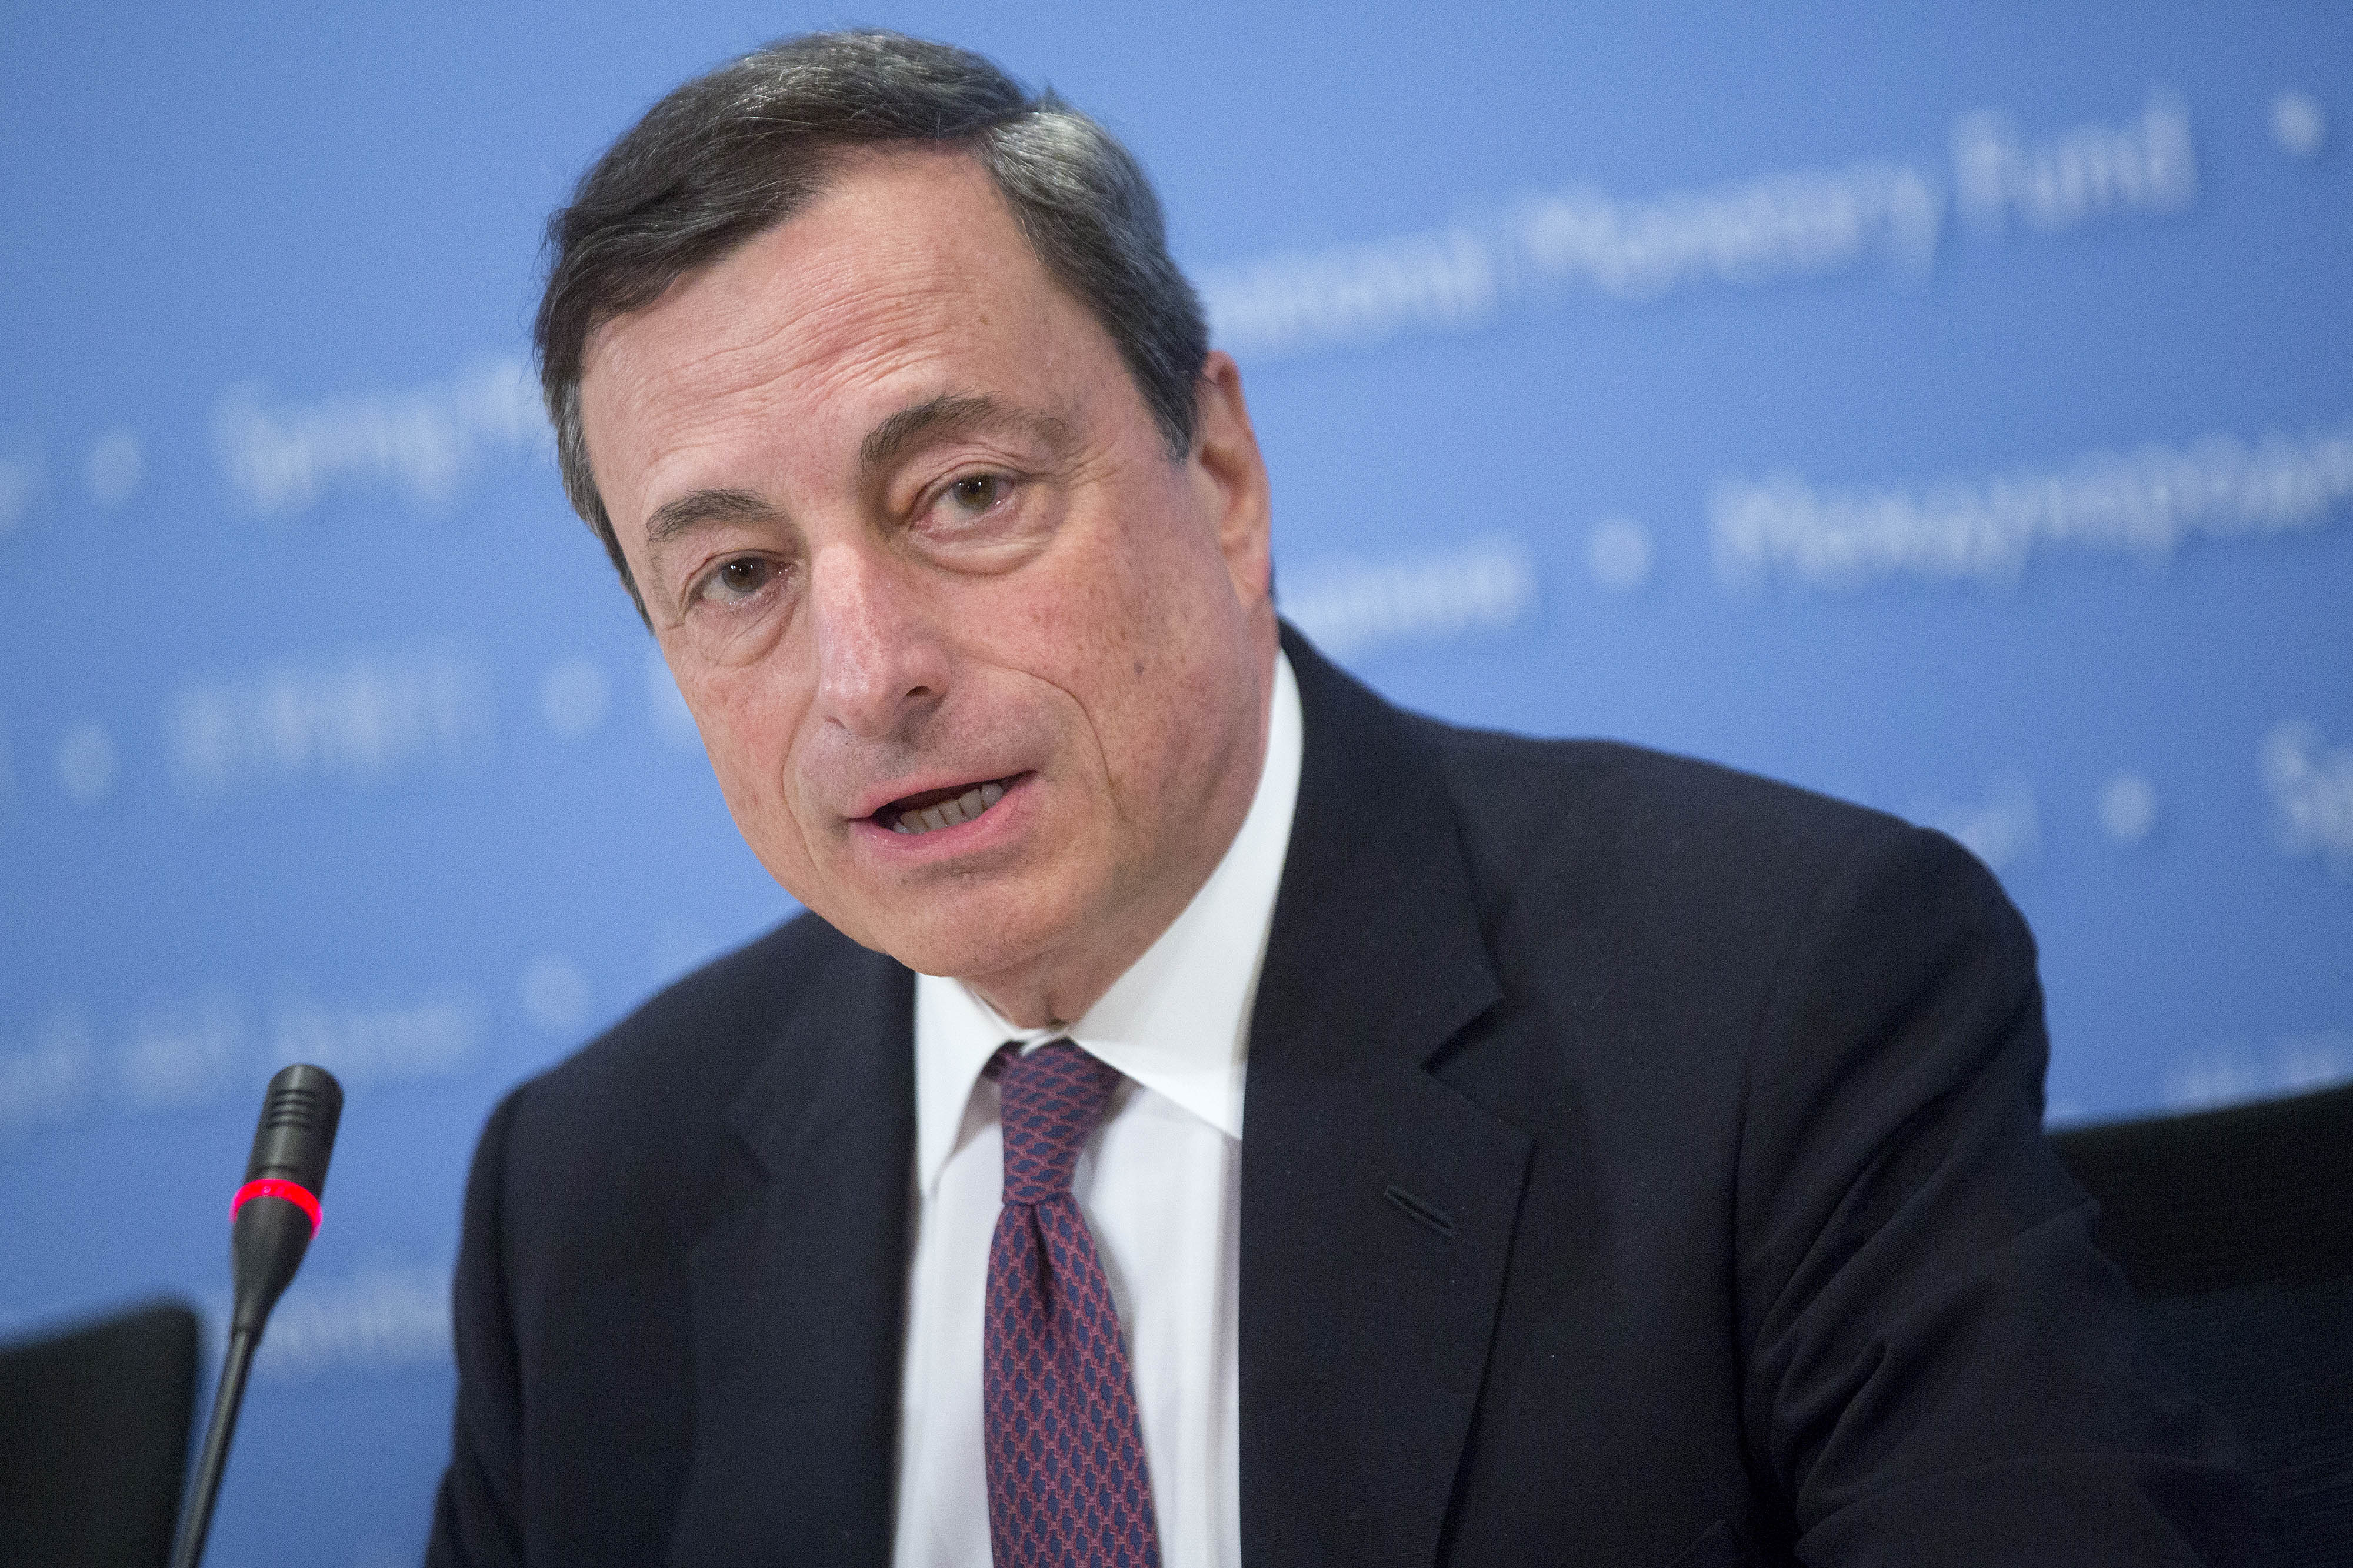 Presedintele BCE exclude iesirea Greciei din zona euro: Introducerea monedei unice europene este ireversibila